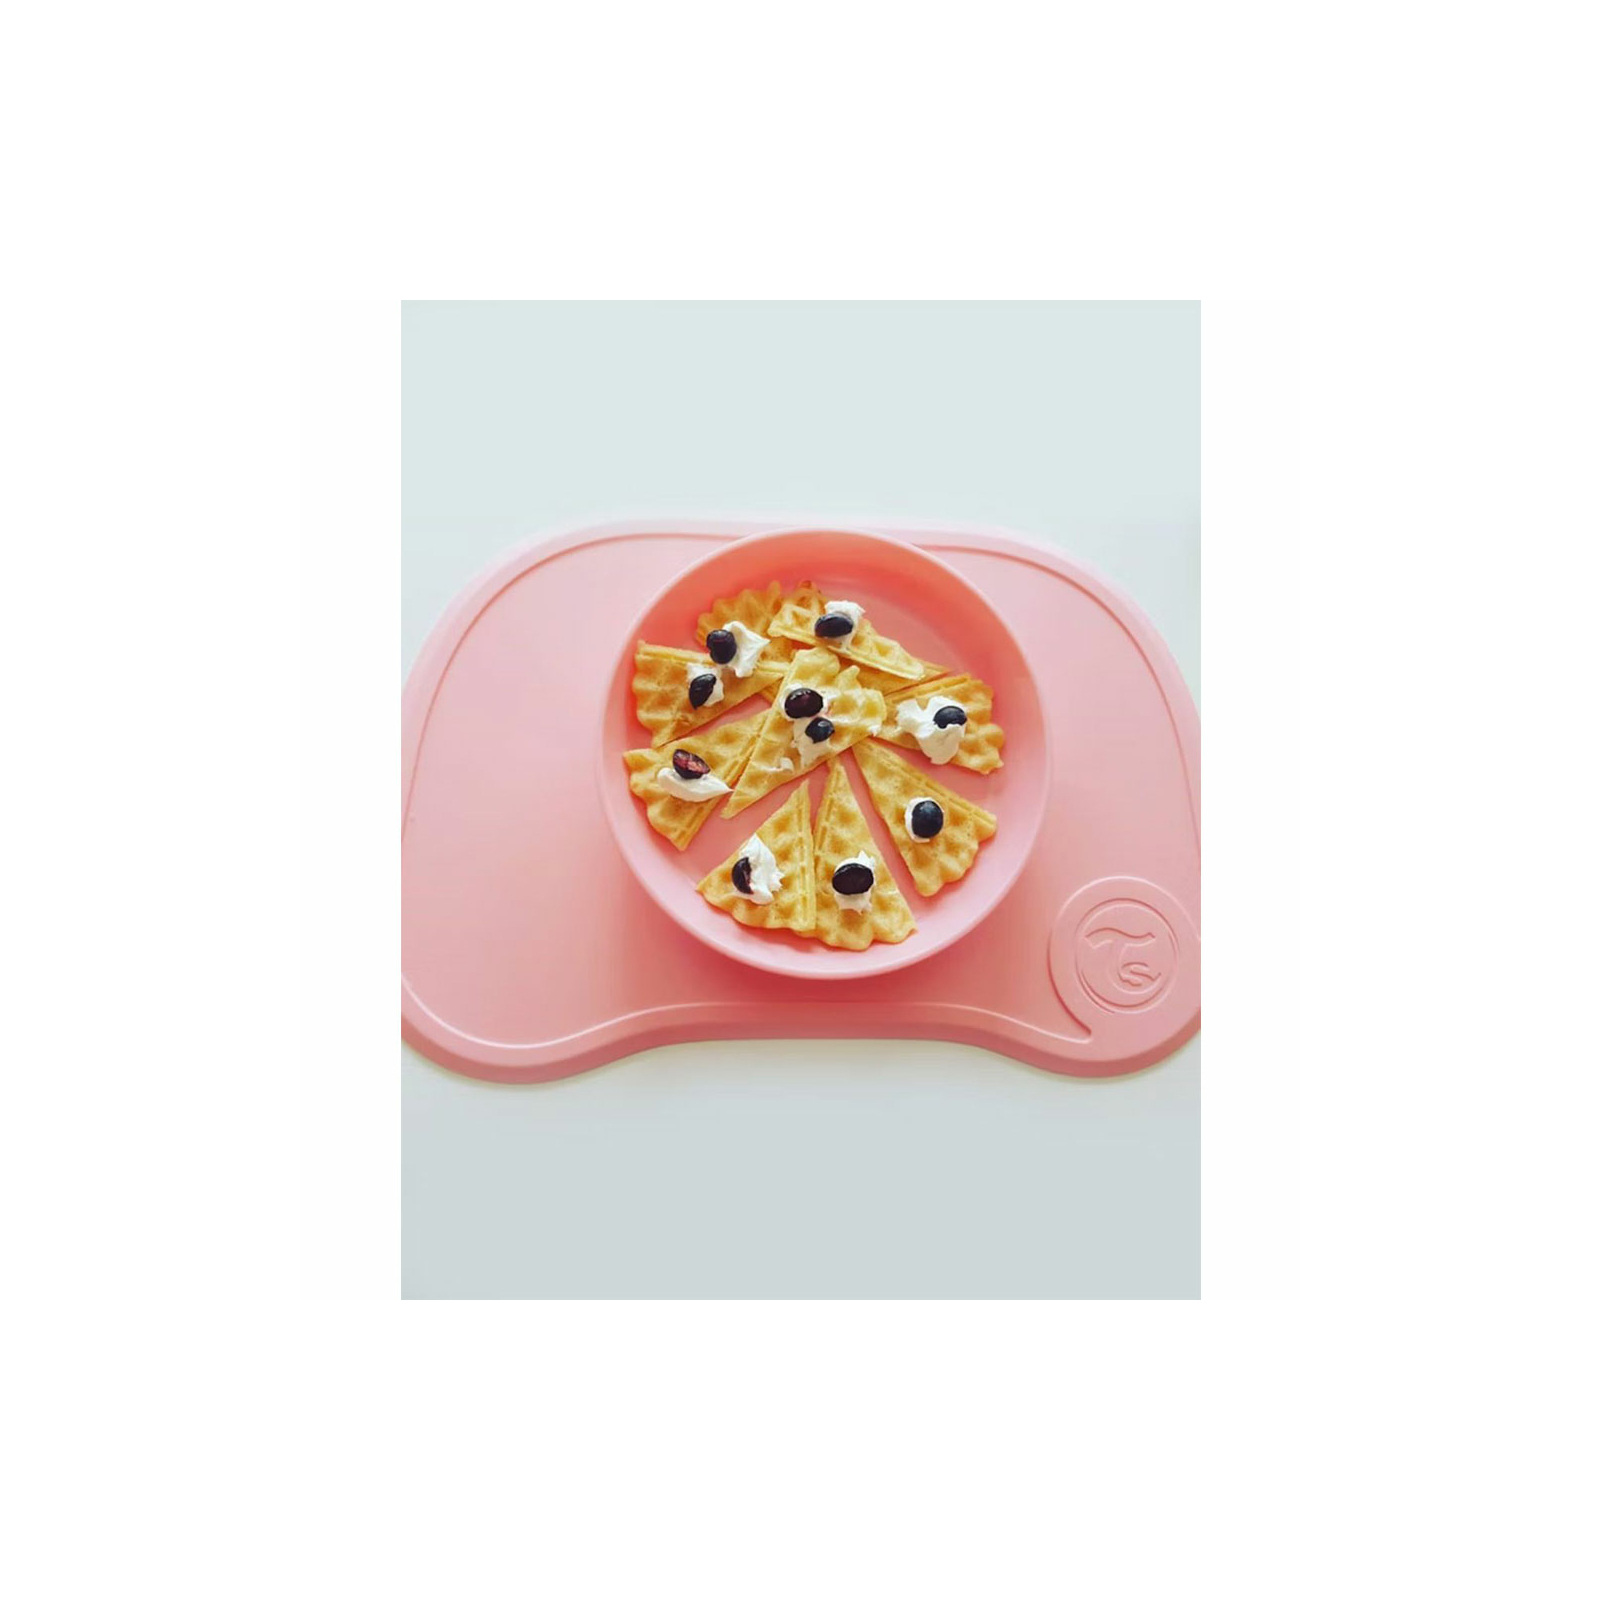 Набор детской посуды Twistshake Pastel Pink коврик с тарелкой (78129) изображение 3